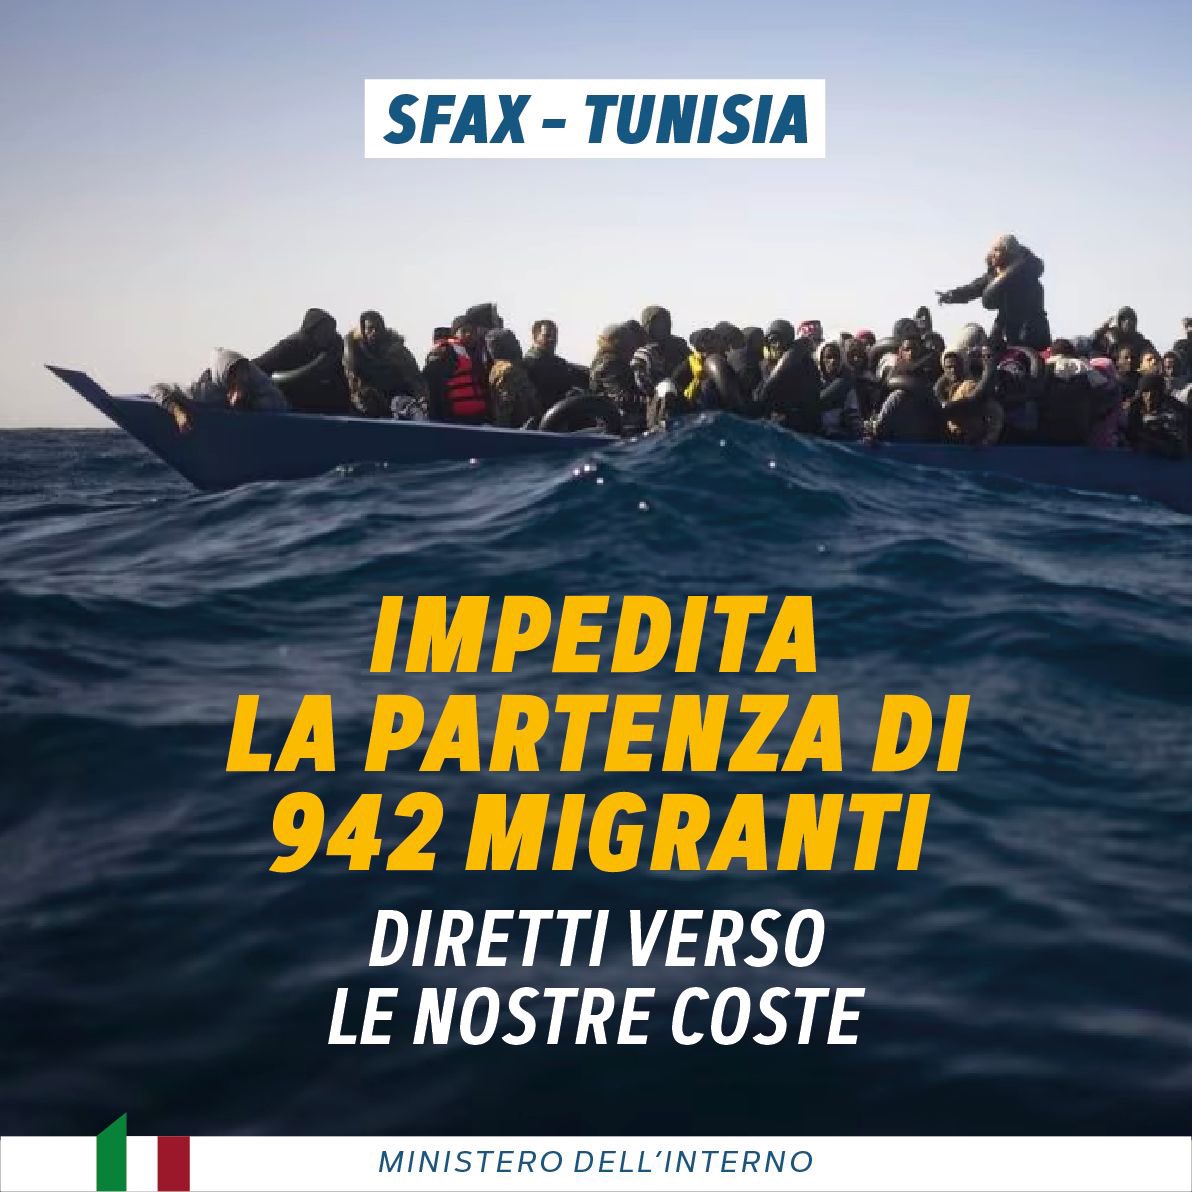 942 migranti irregolari, pronti a imbarcarsi per raggiungere le nostre coste, sono stati fermati dalle autorità tunisine a Sfax. Prosegue, anche grazie alla collaborazione con l’Italia, l’impegno per fermare gli interessi criminali dei trafficanti di esseri umani.